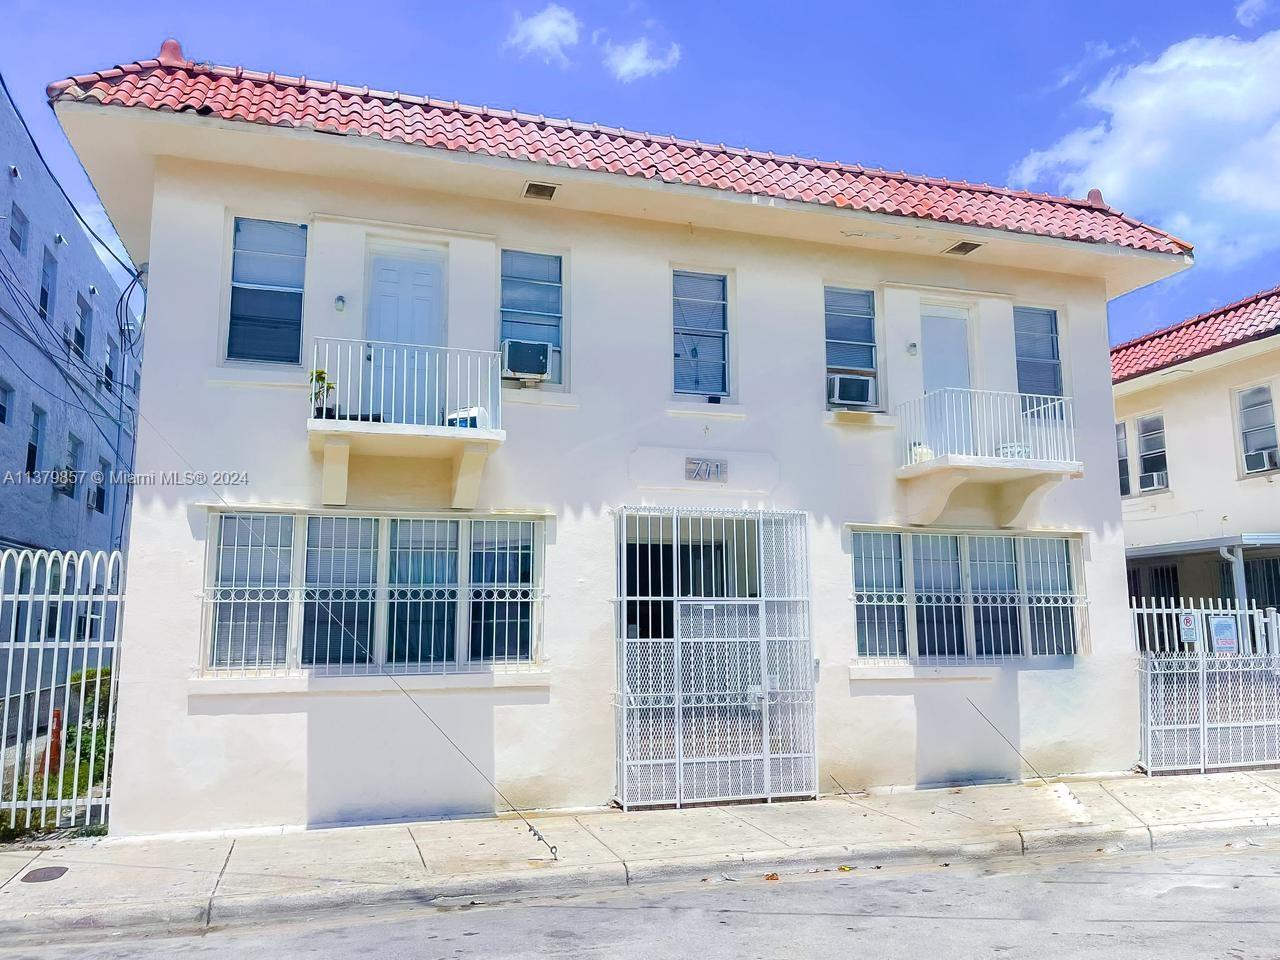 Rental Property at 711 Nw 1st St St, Miami, Broward County, Florida -  - $1,420,000 MO.